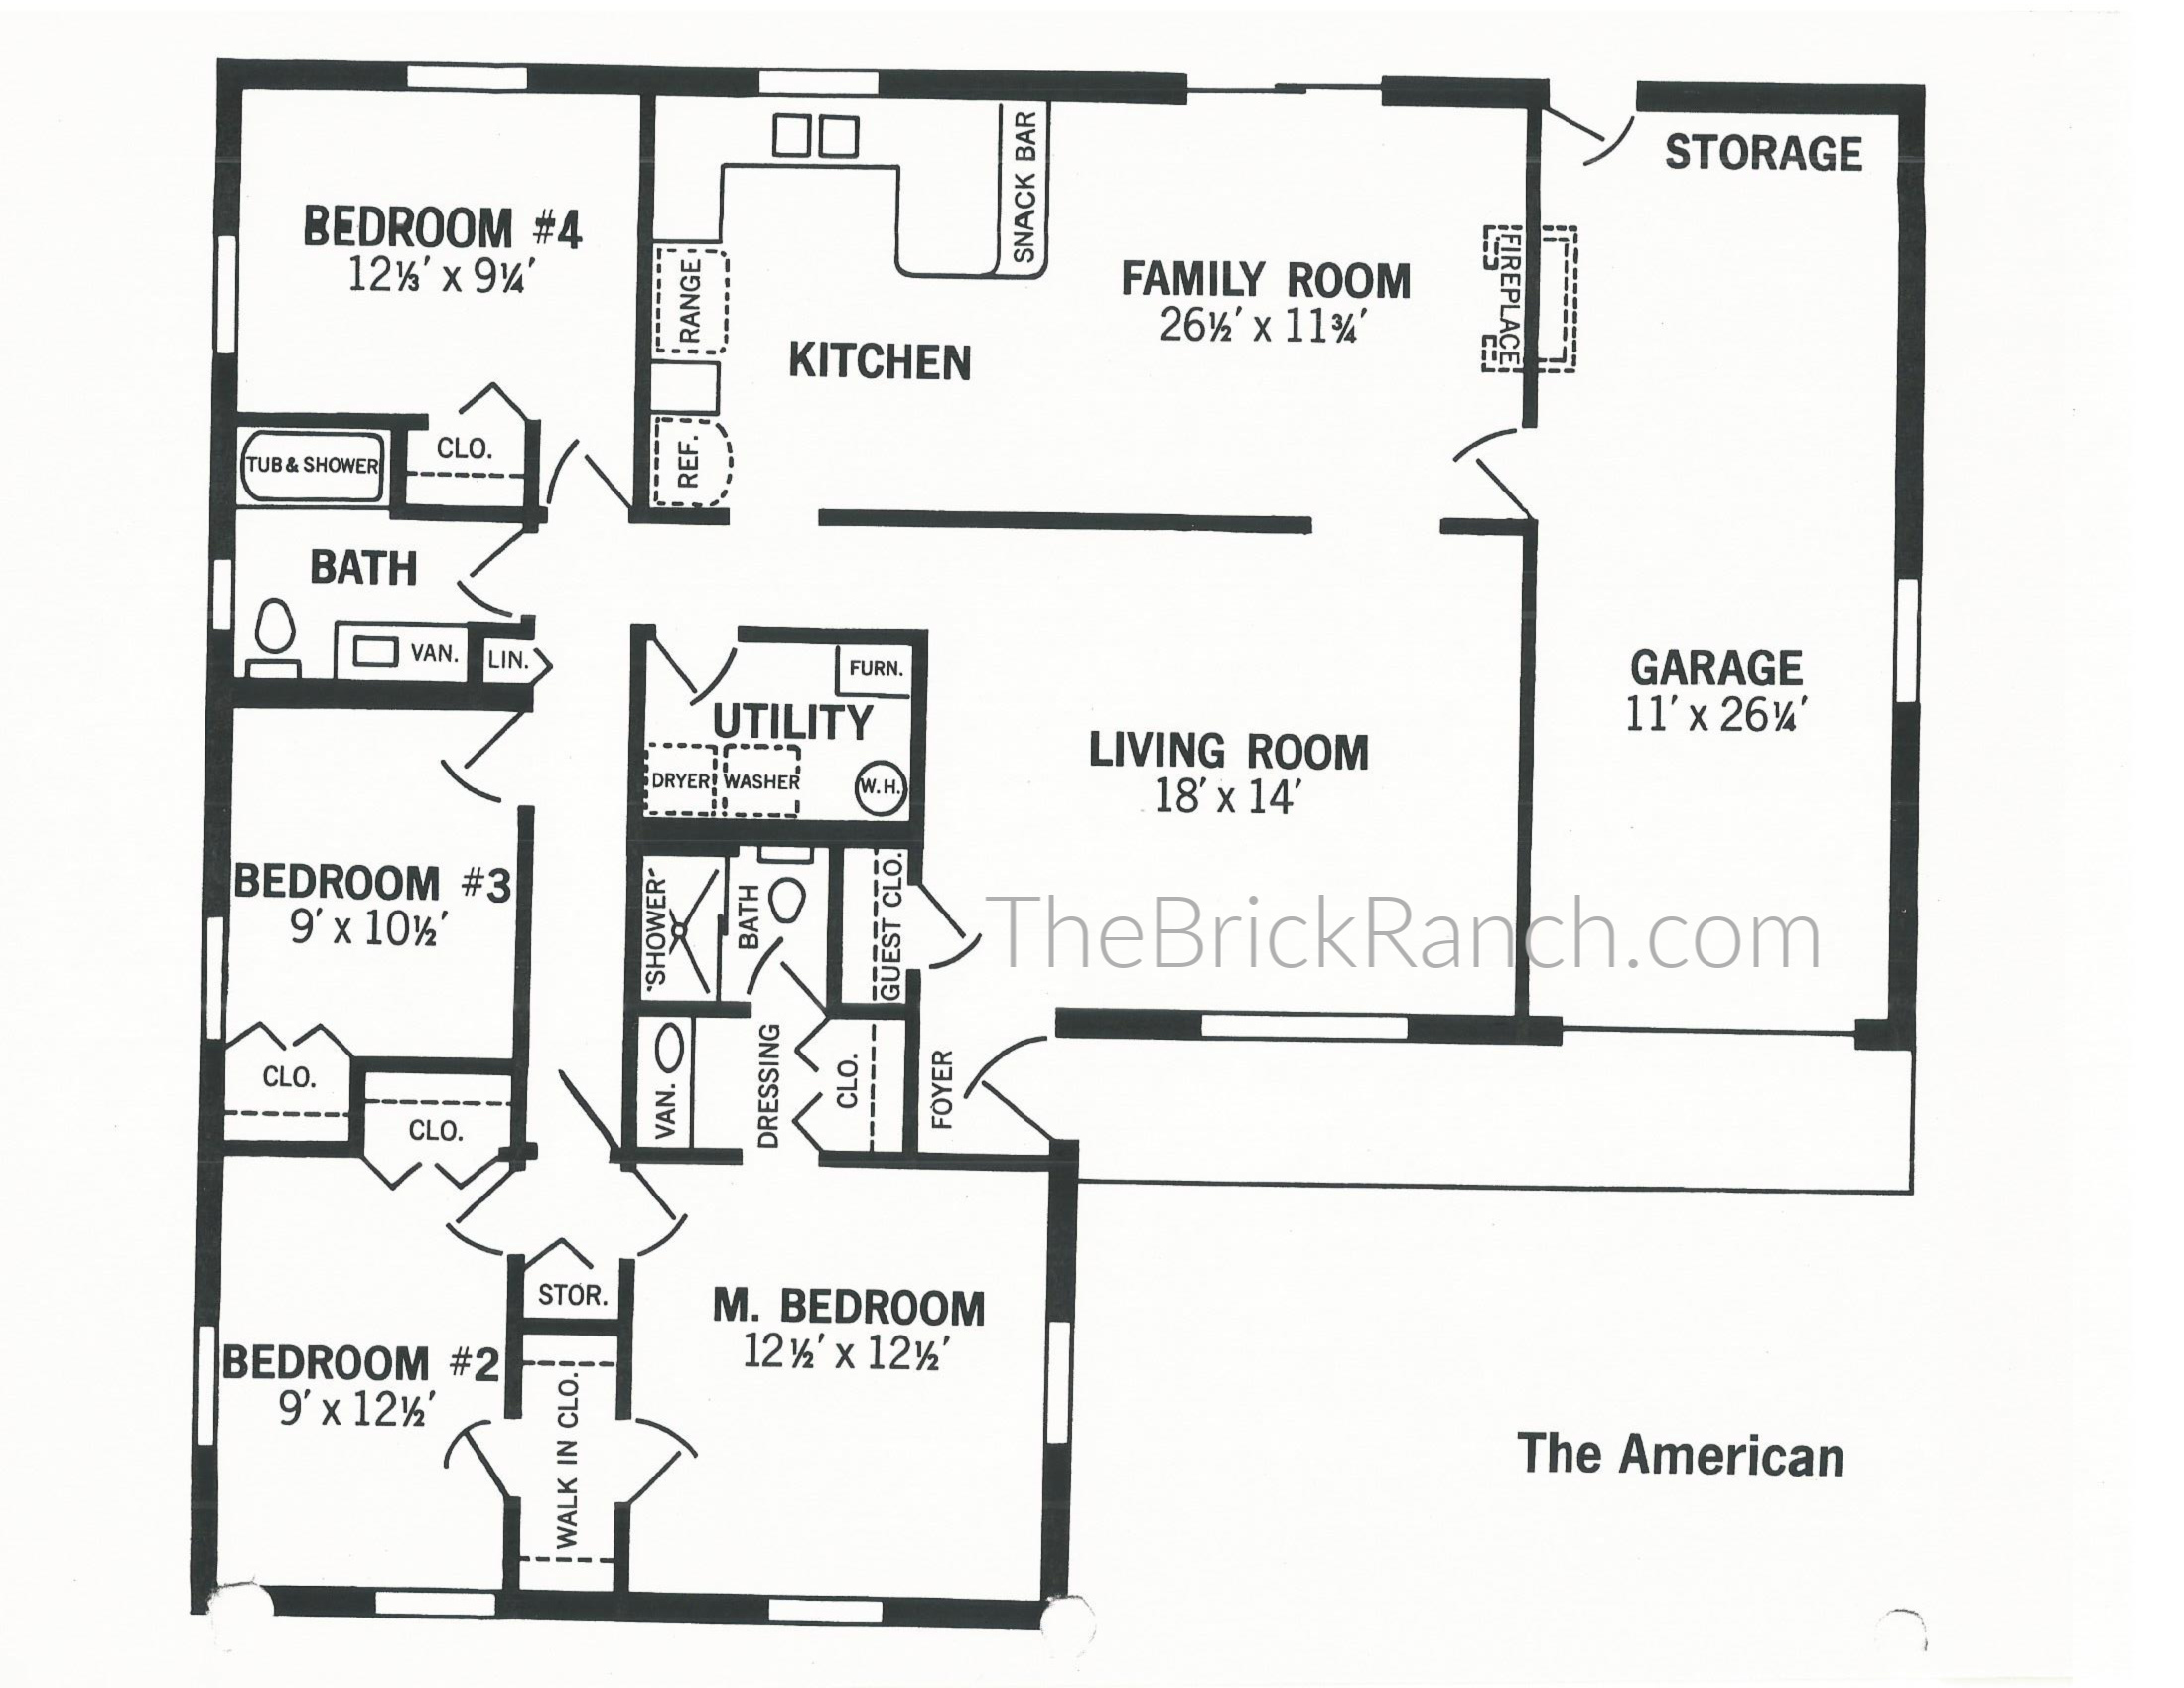 Huber Homes American model floor plan